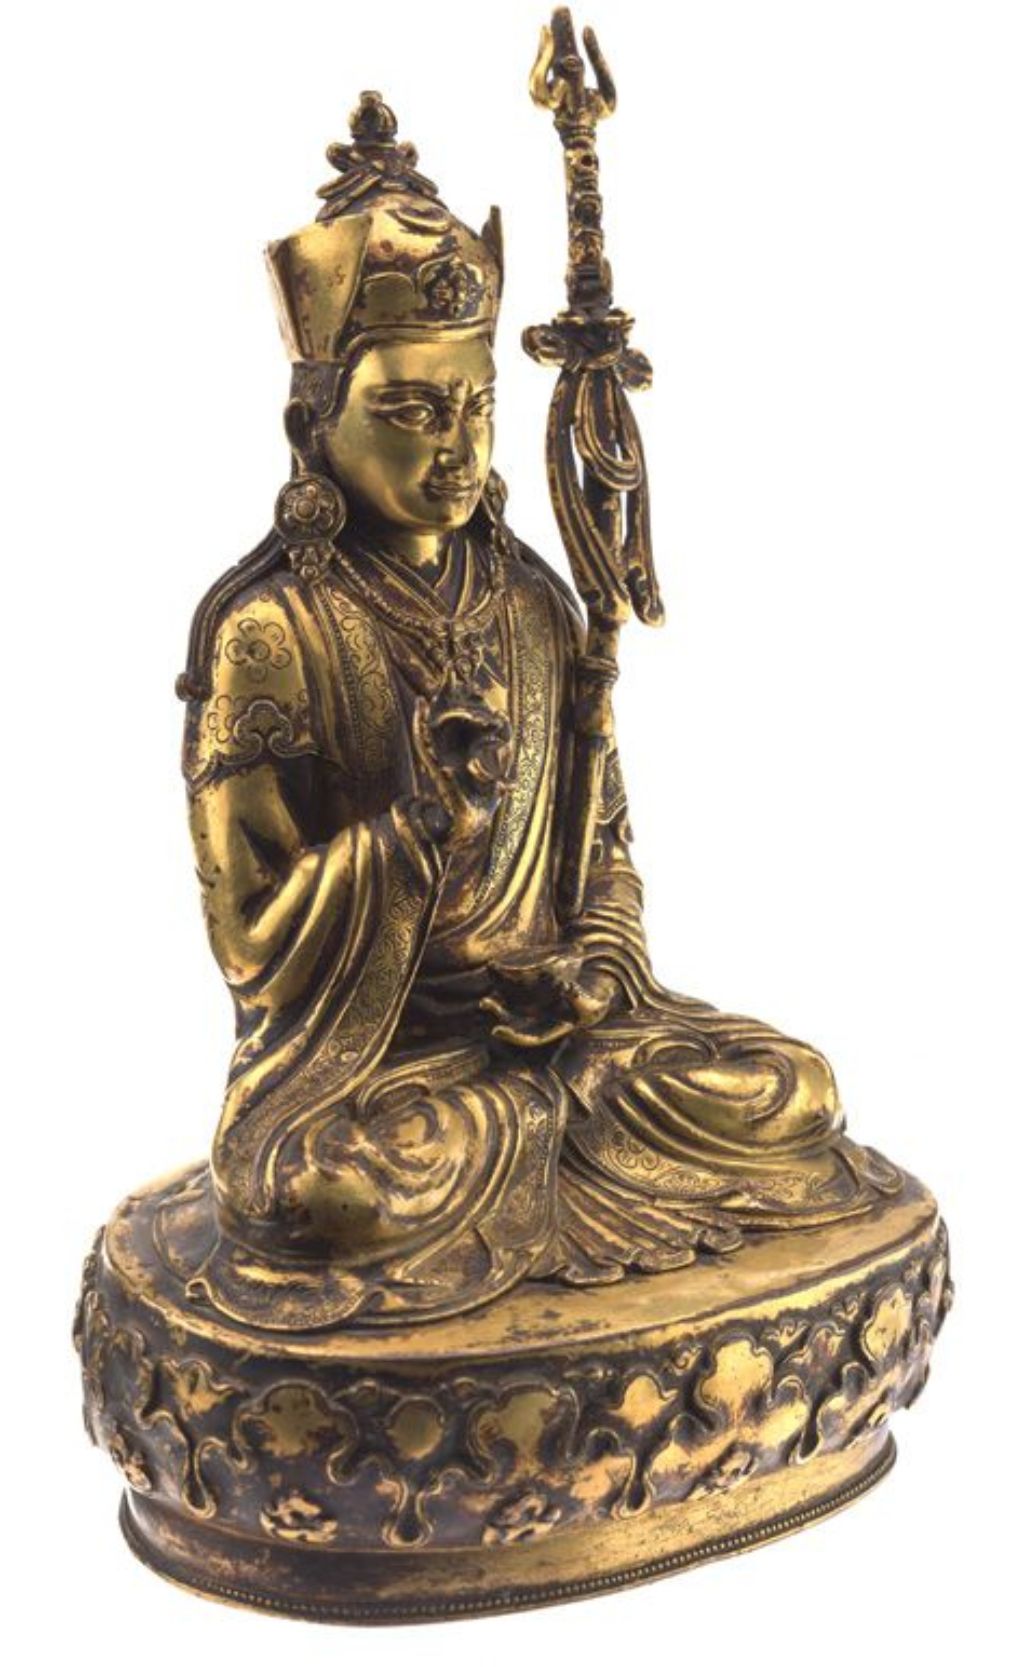 Goldene Buddhafigur, der Buddha trägt eine Kopfbedeckung und hält in den Händen Ritualgegenstände. Er sitzt auf einem Podest.